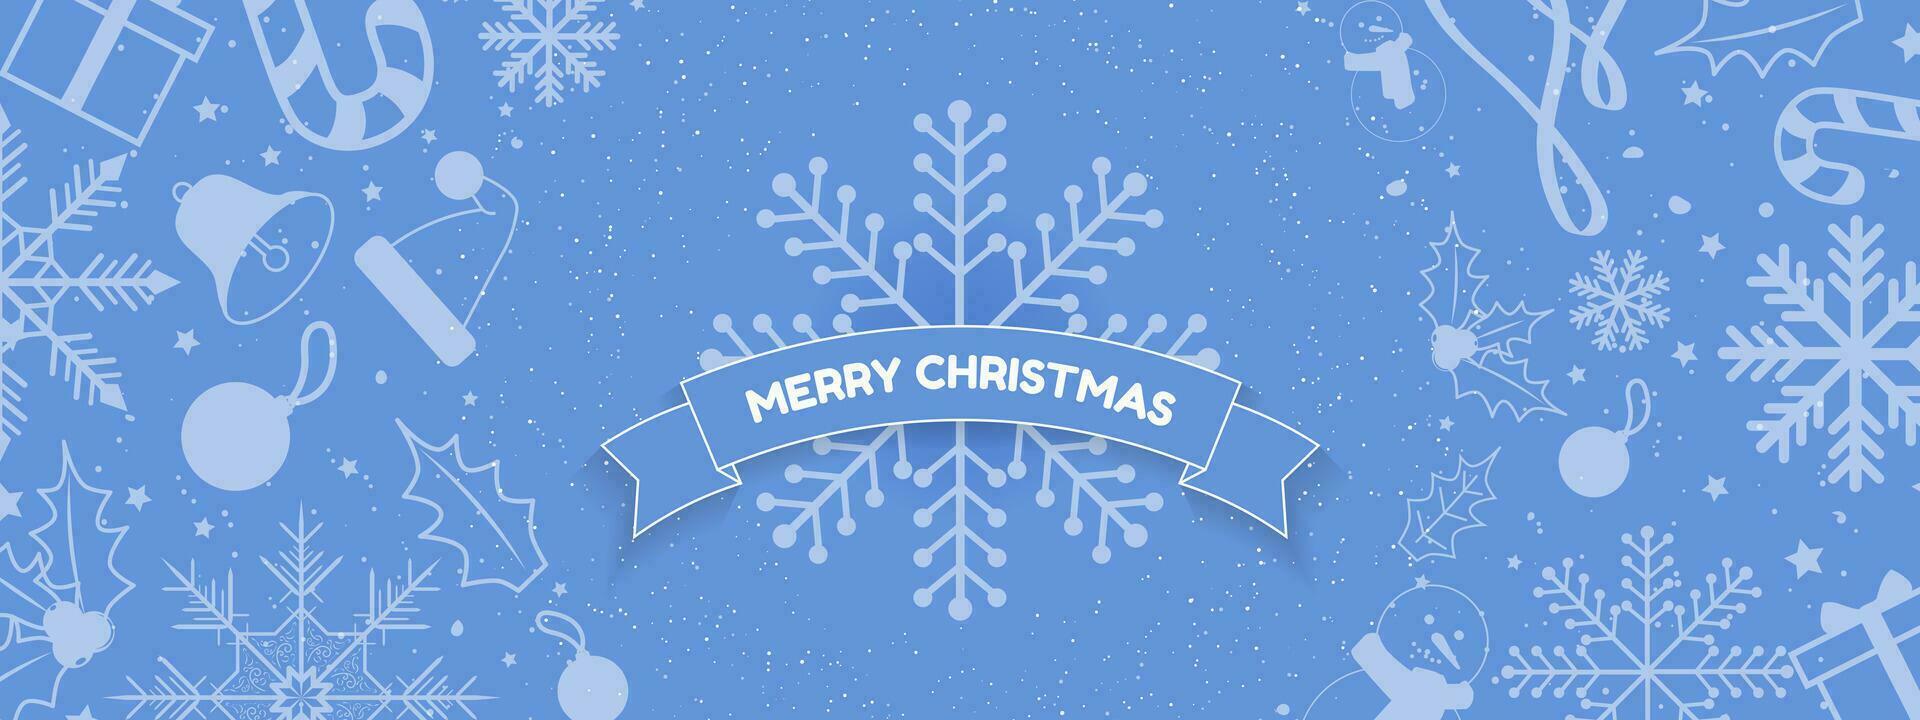 schattig Kerstmis vakantie banier met sier- sneeuwvlok en vrolijk Kerstmis tekst groet Aan lint slinger Aan taling blauw achtergrond versierd met sneeuwvlokken, de kerstman hoed, sneeuwman, blad, lauwerkrans. eps 10. vector